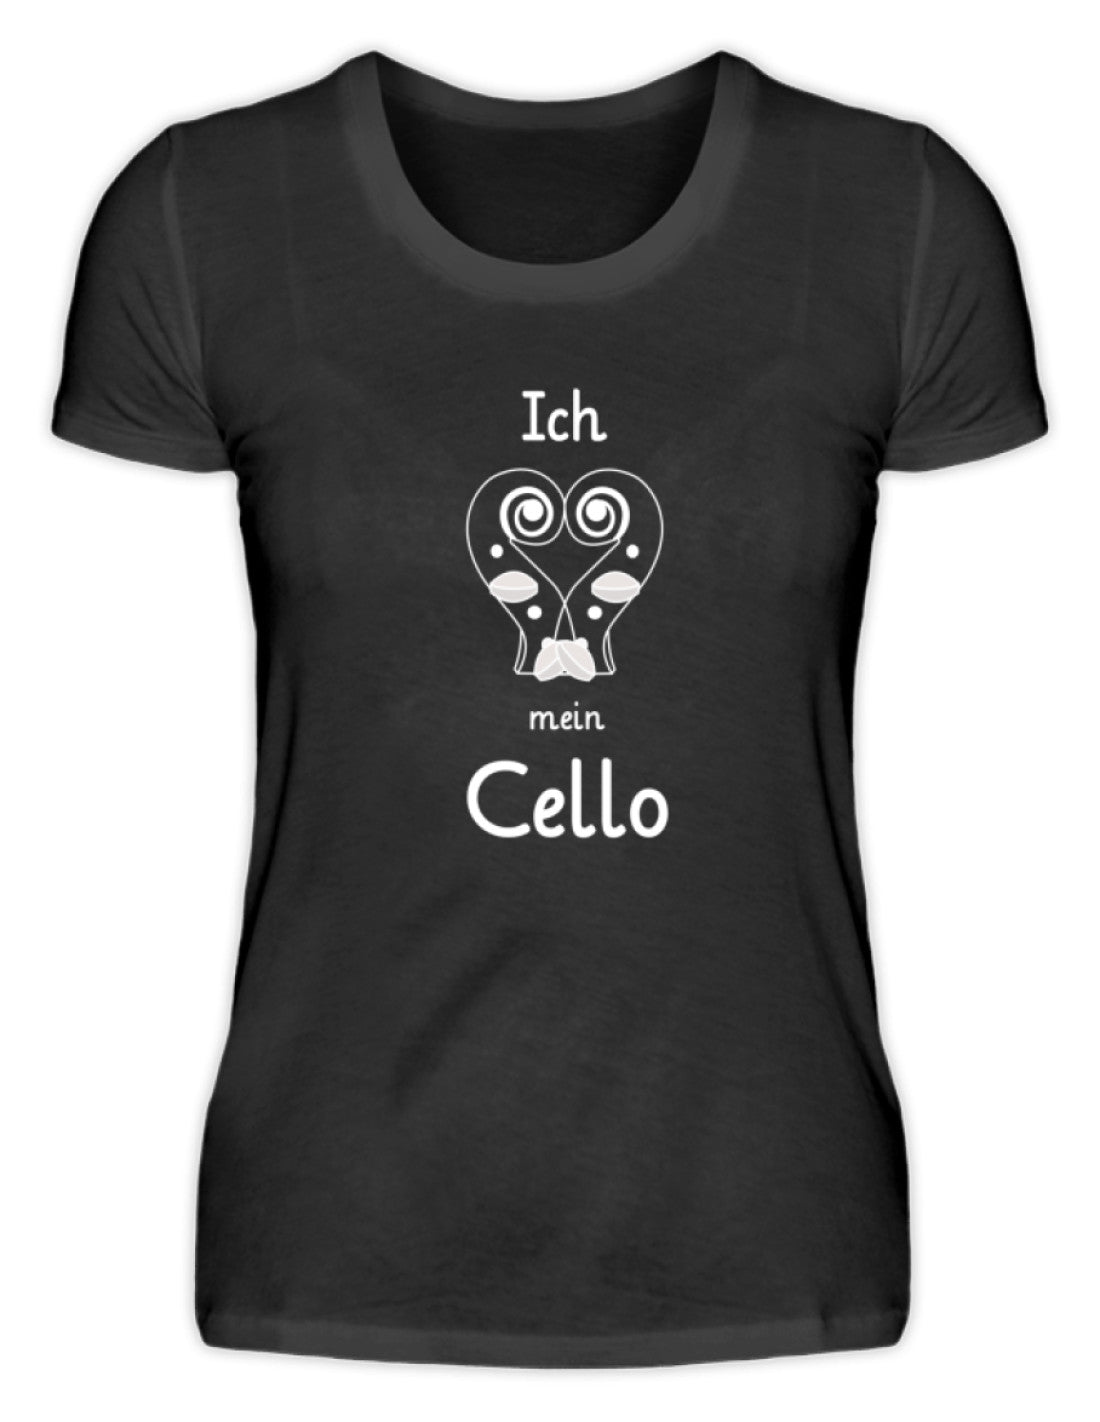 Cello T-Shirt